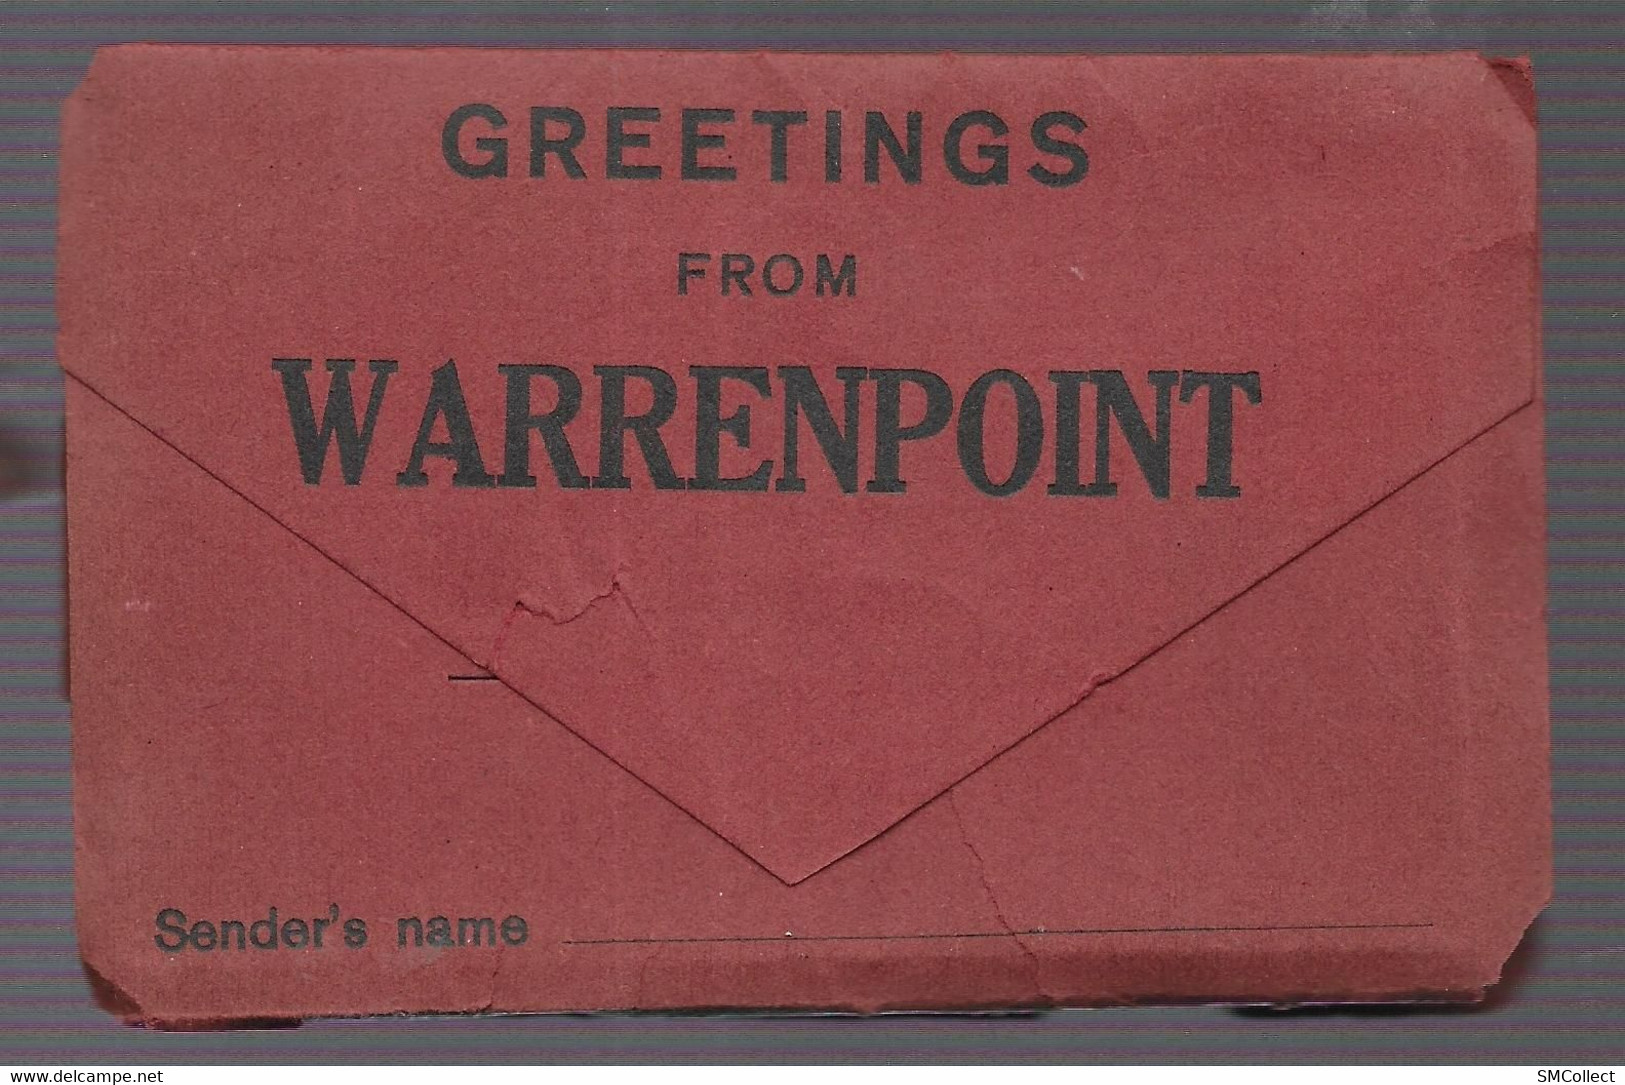 Irlande du Nord. Warrenpoint, album miniature à poster de 12 vues format 111 x 75 mm environ, voir description (5657)